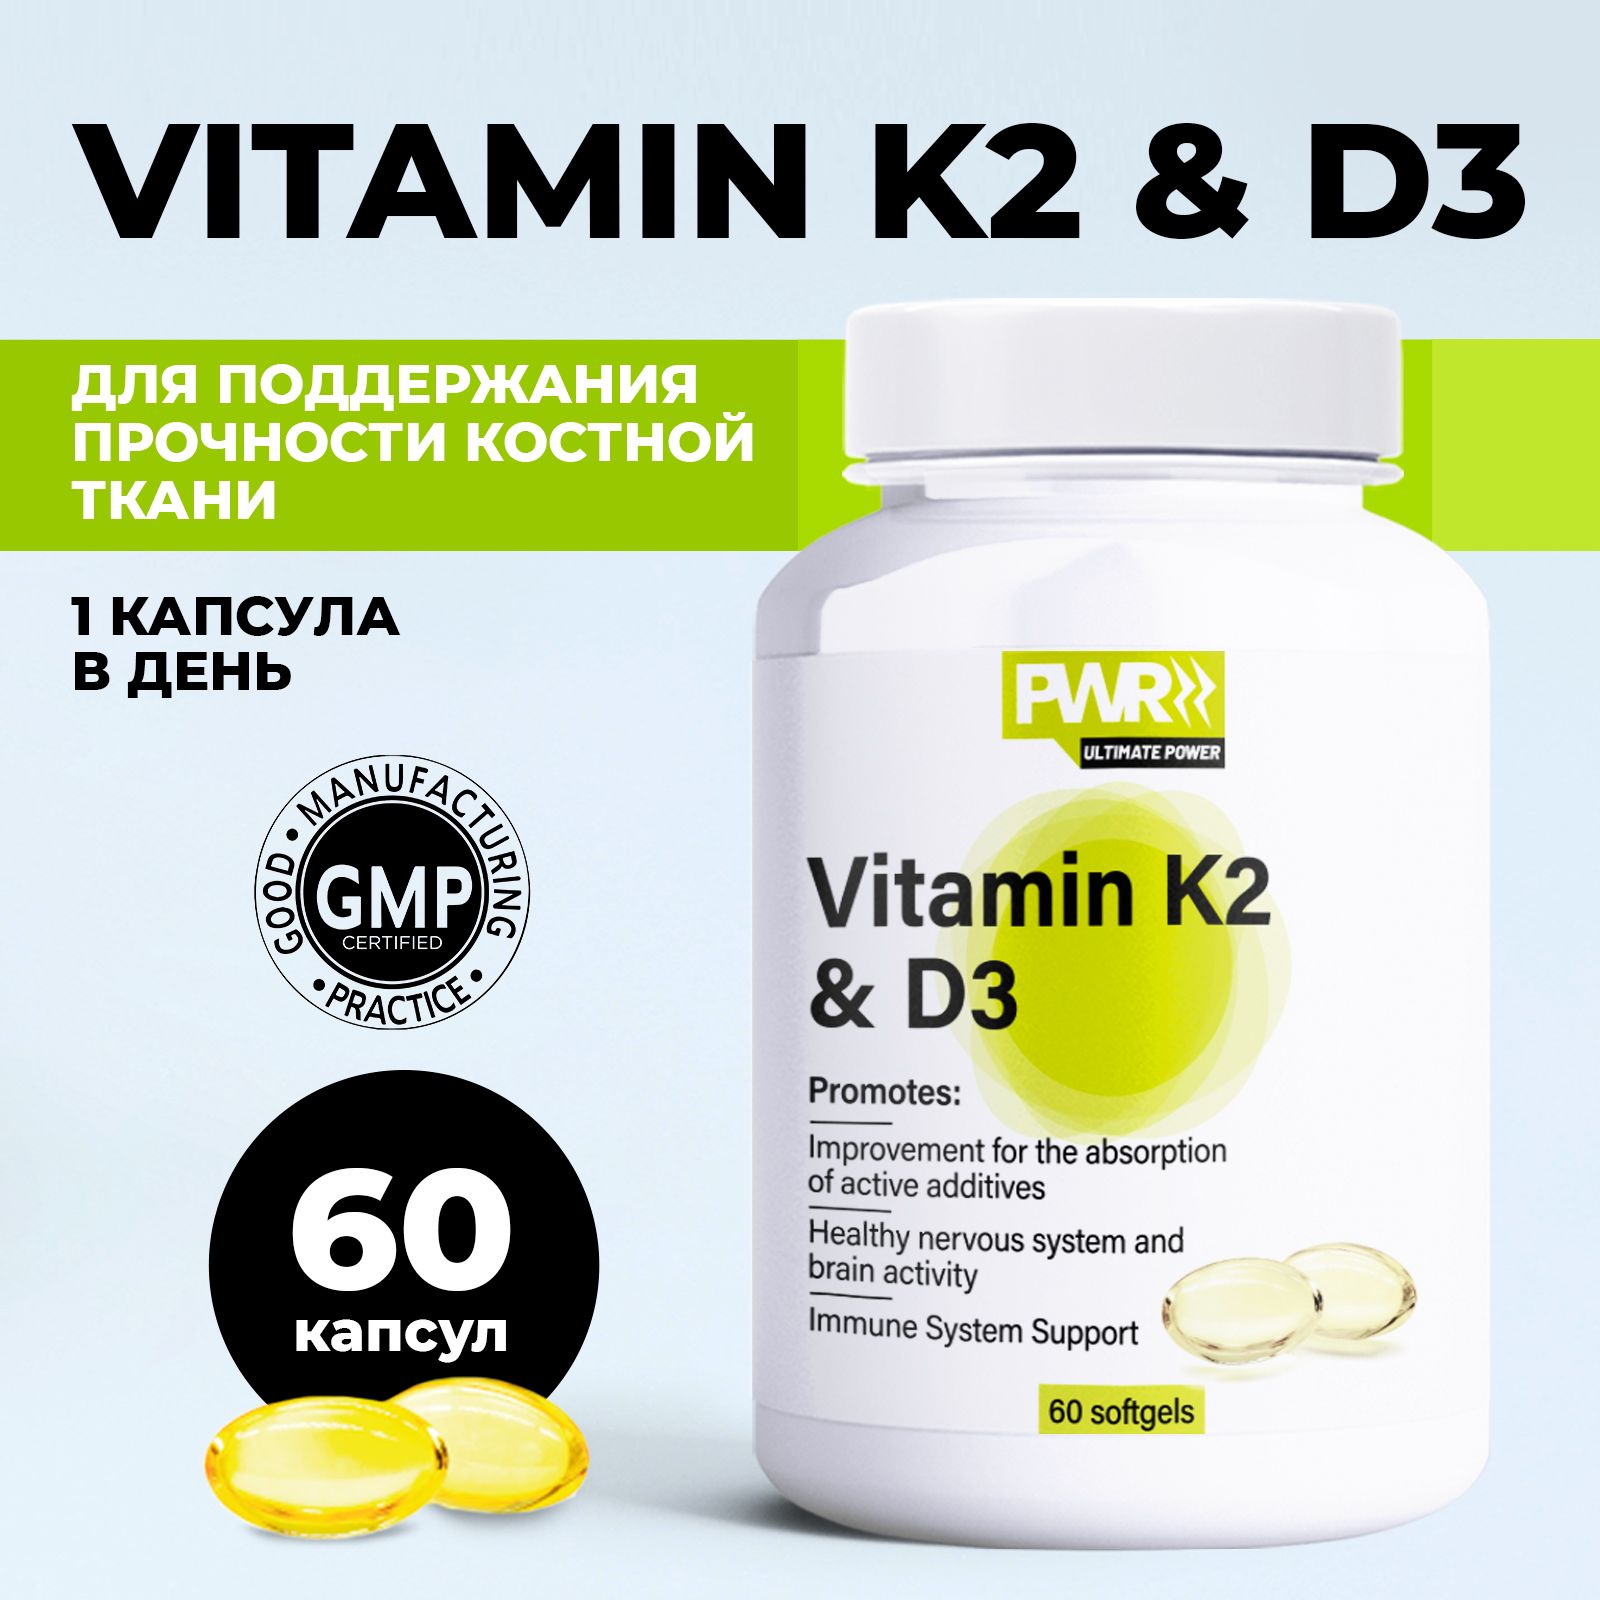 Витамин д пить с к2. PWR Ultimate Power витамин д д3. Нордик витамин д3. GLS витамин д3. Орзакс витамин д3 к2.